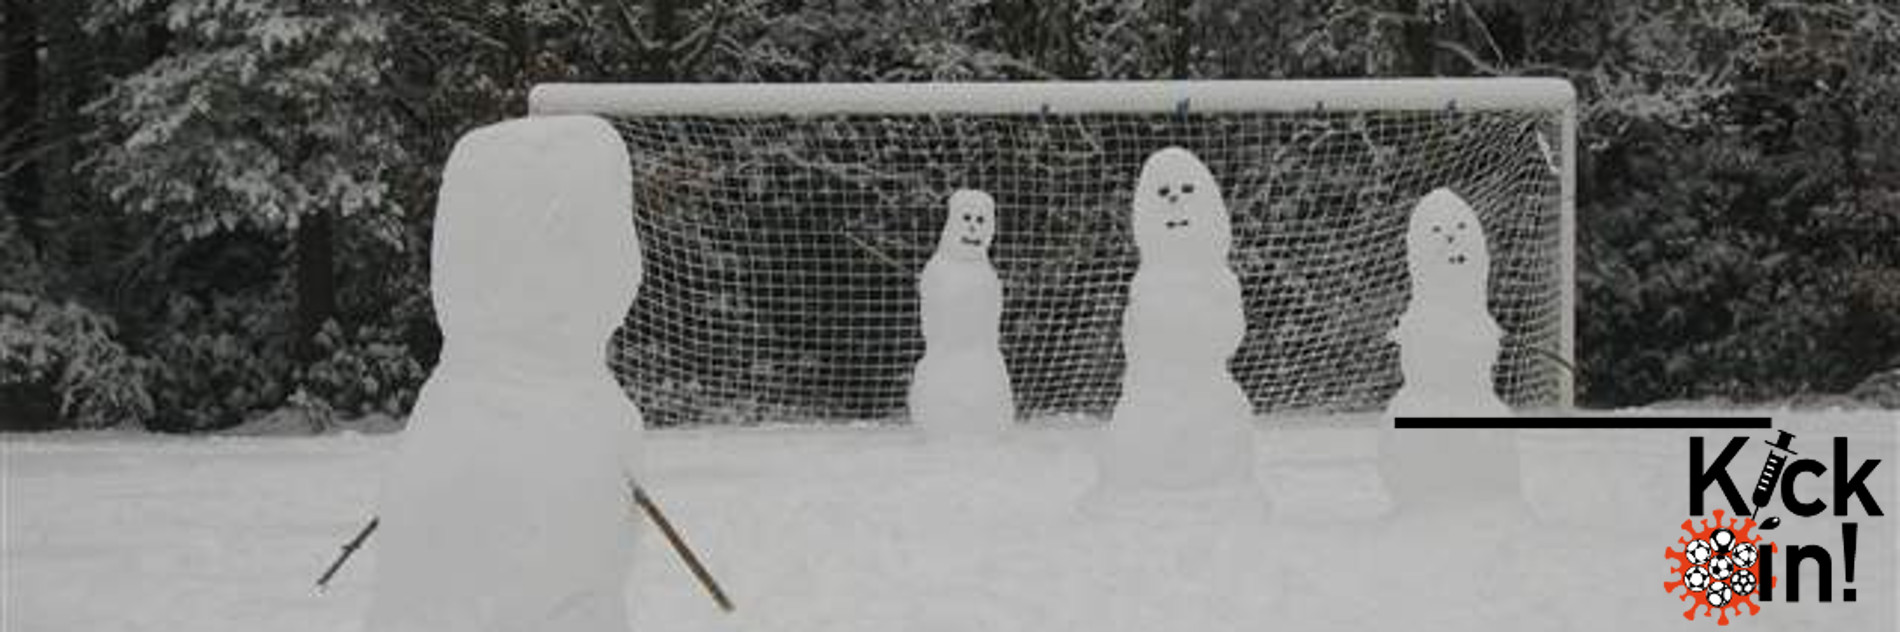 Vier Schneefiguren auf einem verschneiten Fußballfeld.